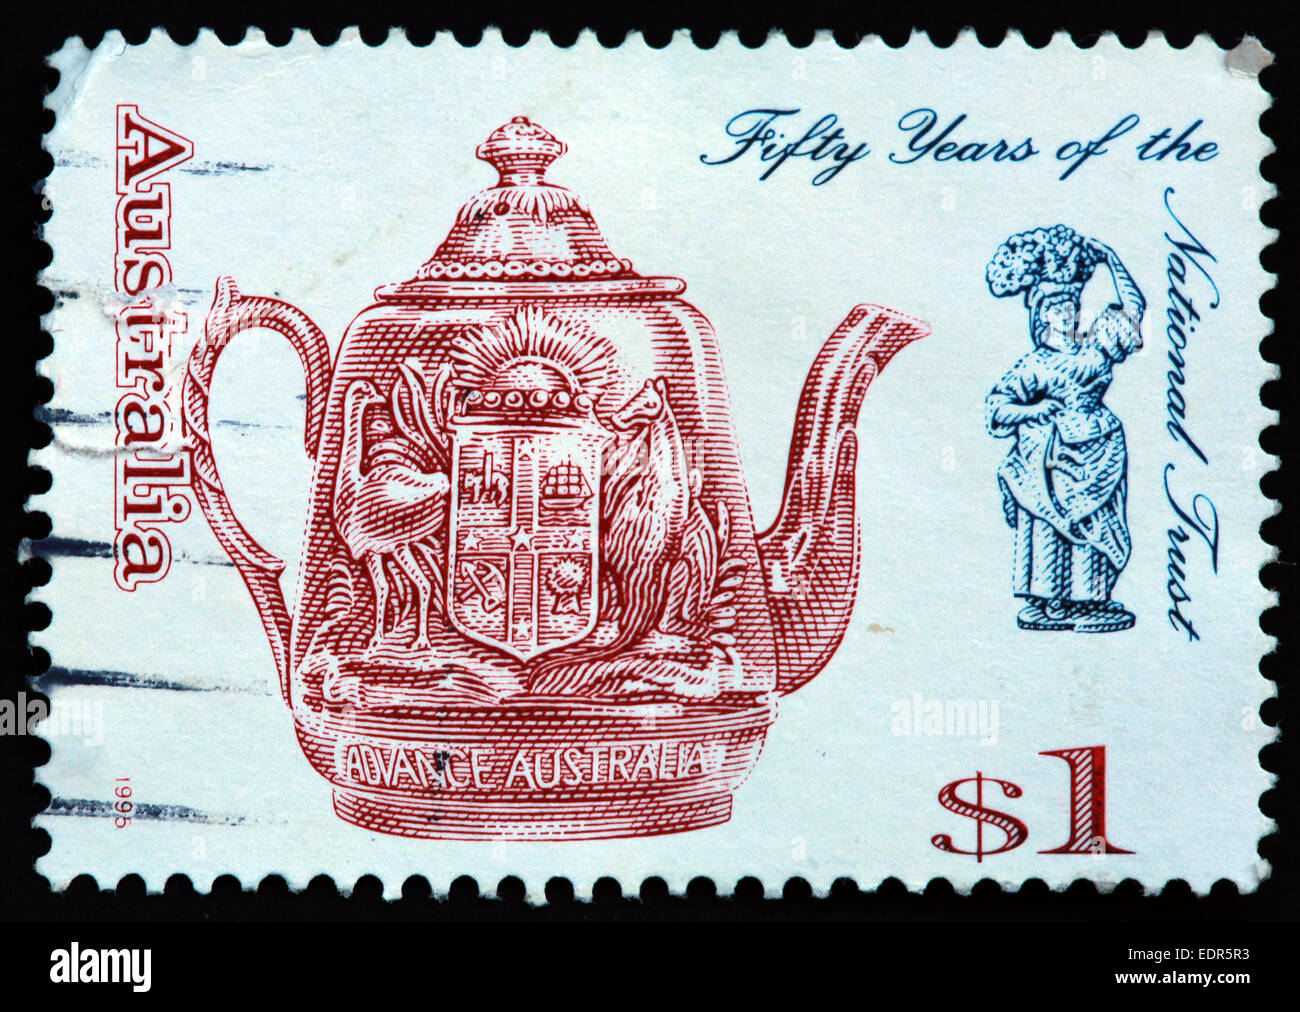 Verwendet und Poststempel Australien / Austrailian Stempel $1 1995 50 50 Jahr sof das nationale Vertrauen voraus Australien Stockfoto